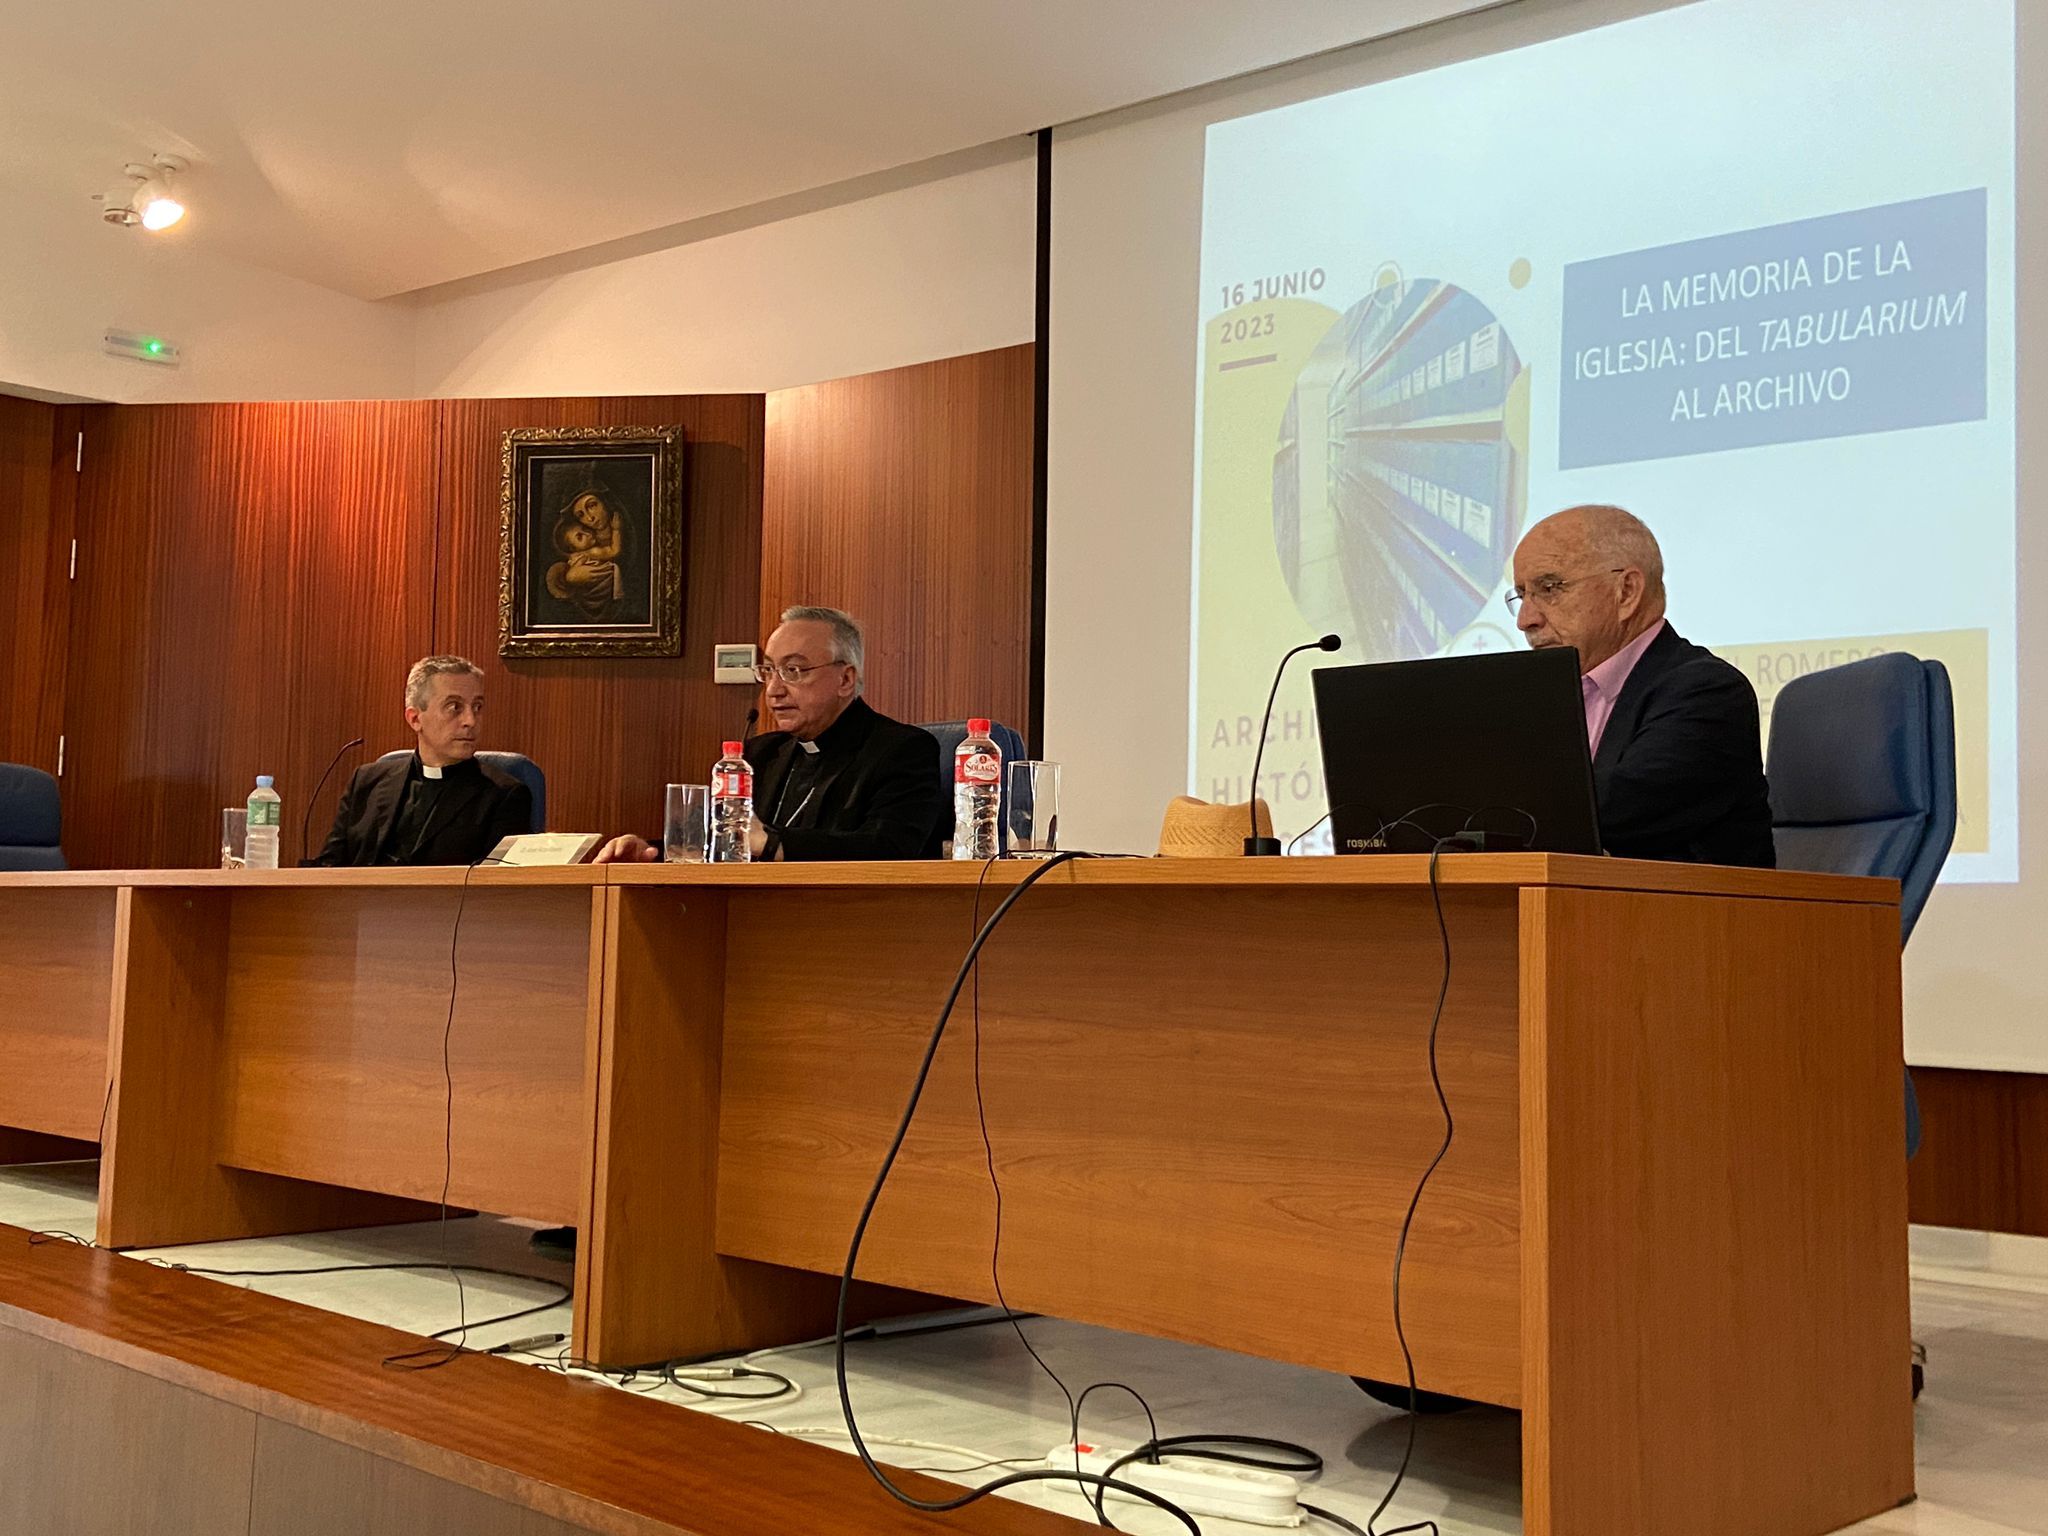 El obispo, el director del archivo y Manuel Romero Tallafigo, catedrático de Archivística, dando la conferencia final del acto de presentación. 